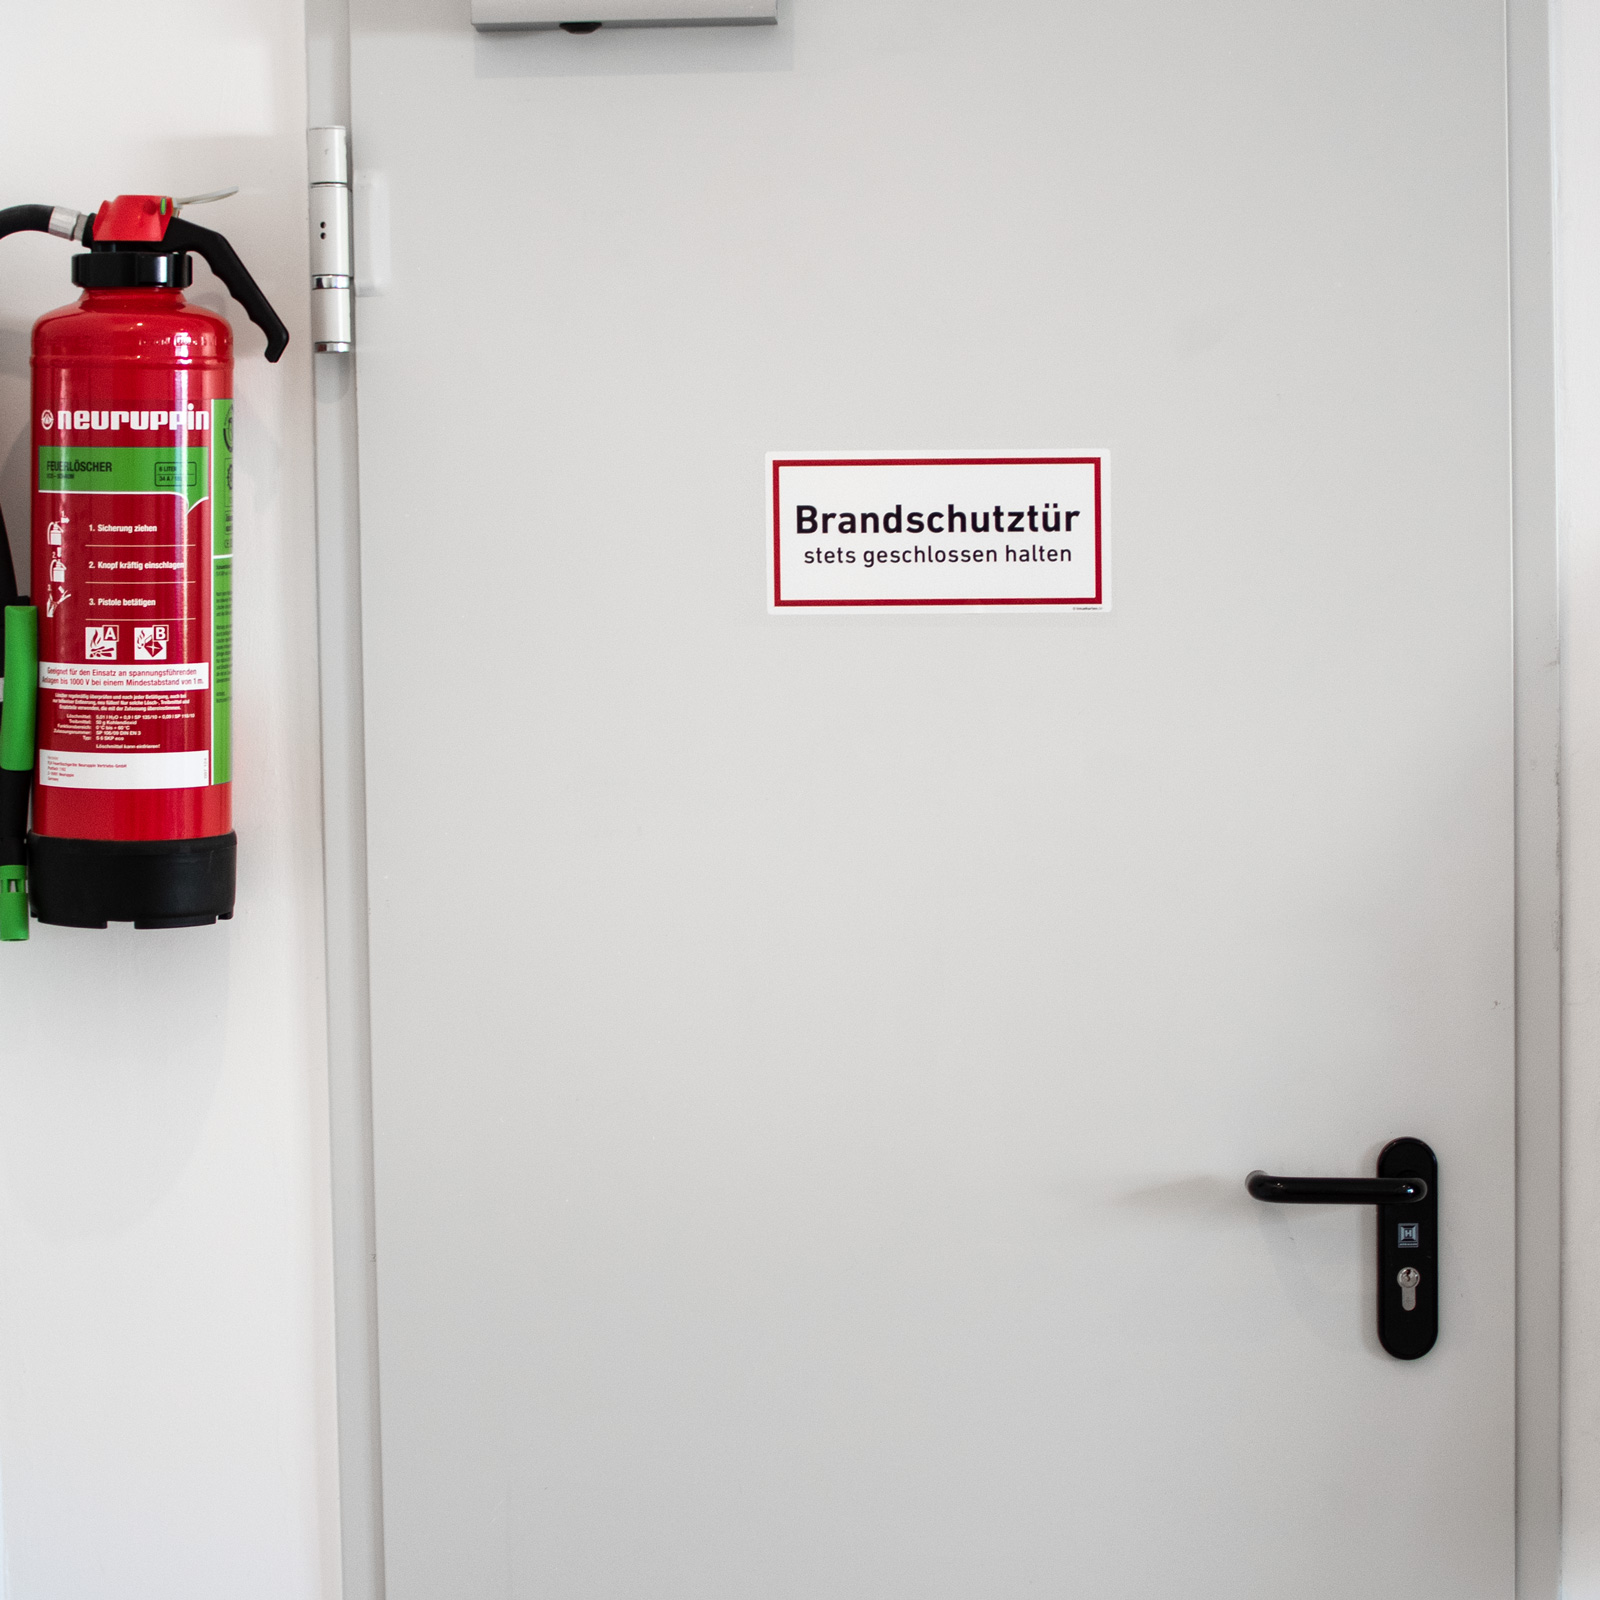 Brandschutztür stets geschlossen halten Aufkleber Schild Hinweis Tür Sticker